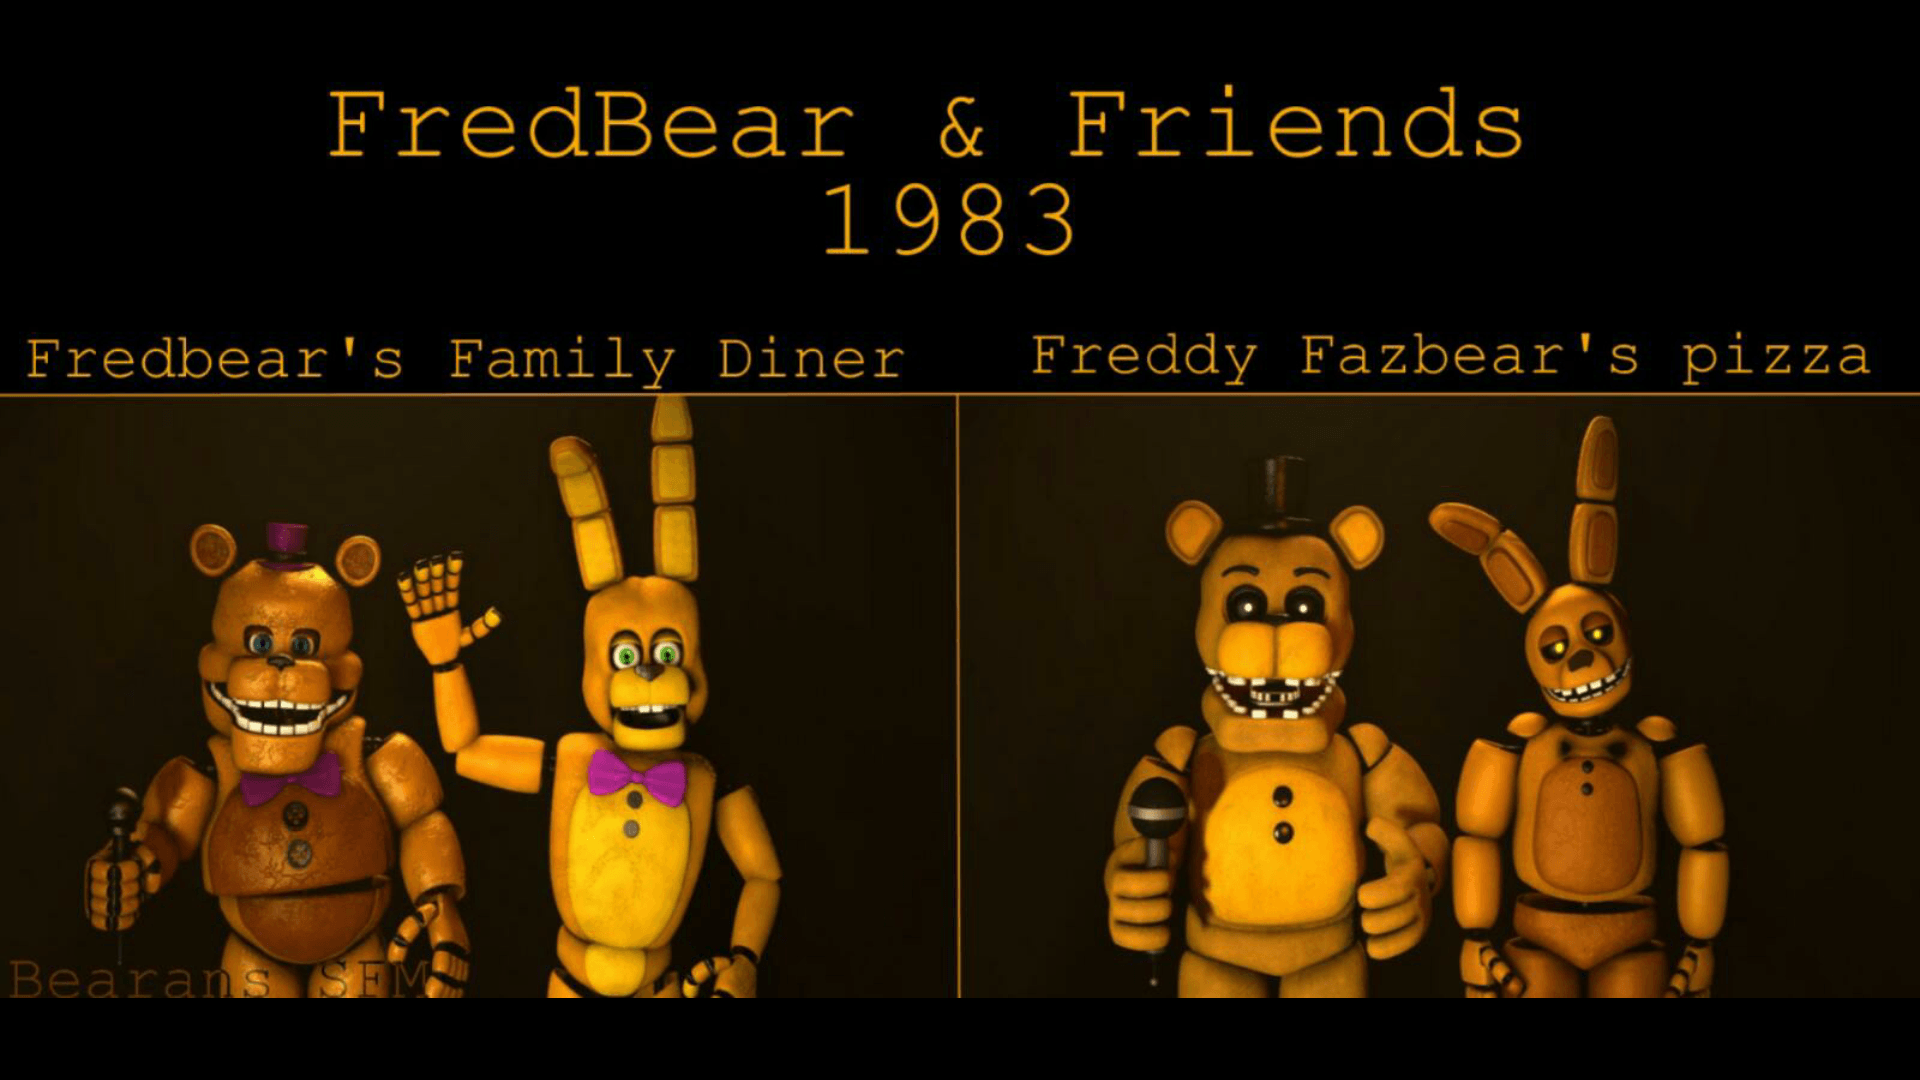 Steam Workshop::fredbears family dinner